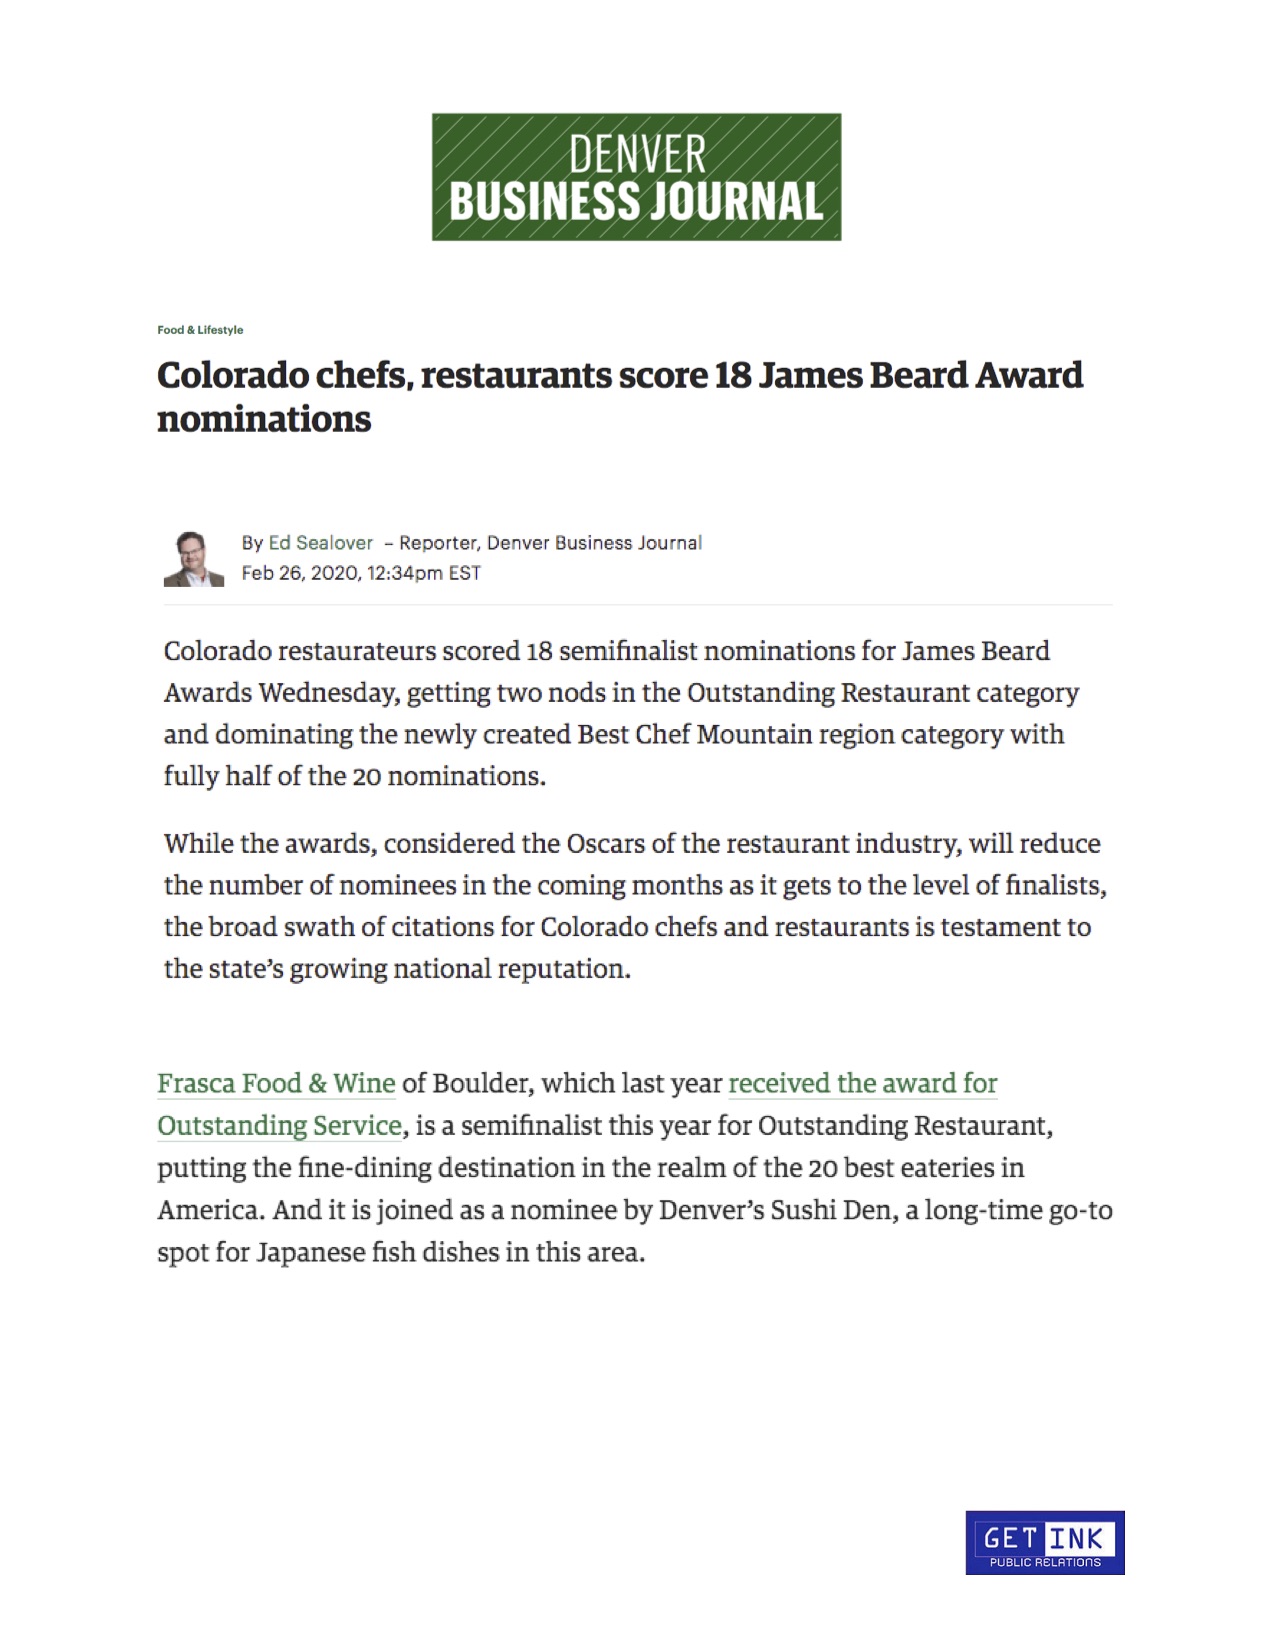 Sushi Den James Beard Award Business Denver Journal - Get Ink PR